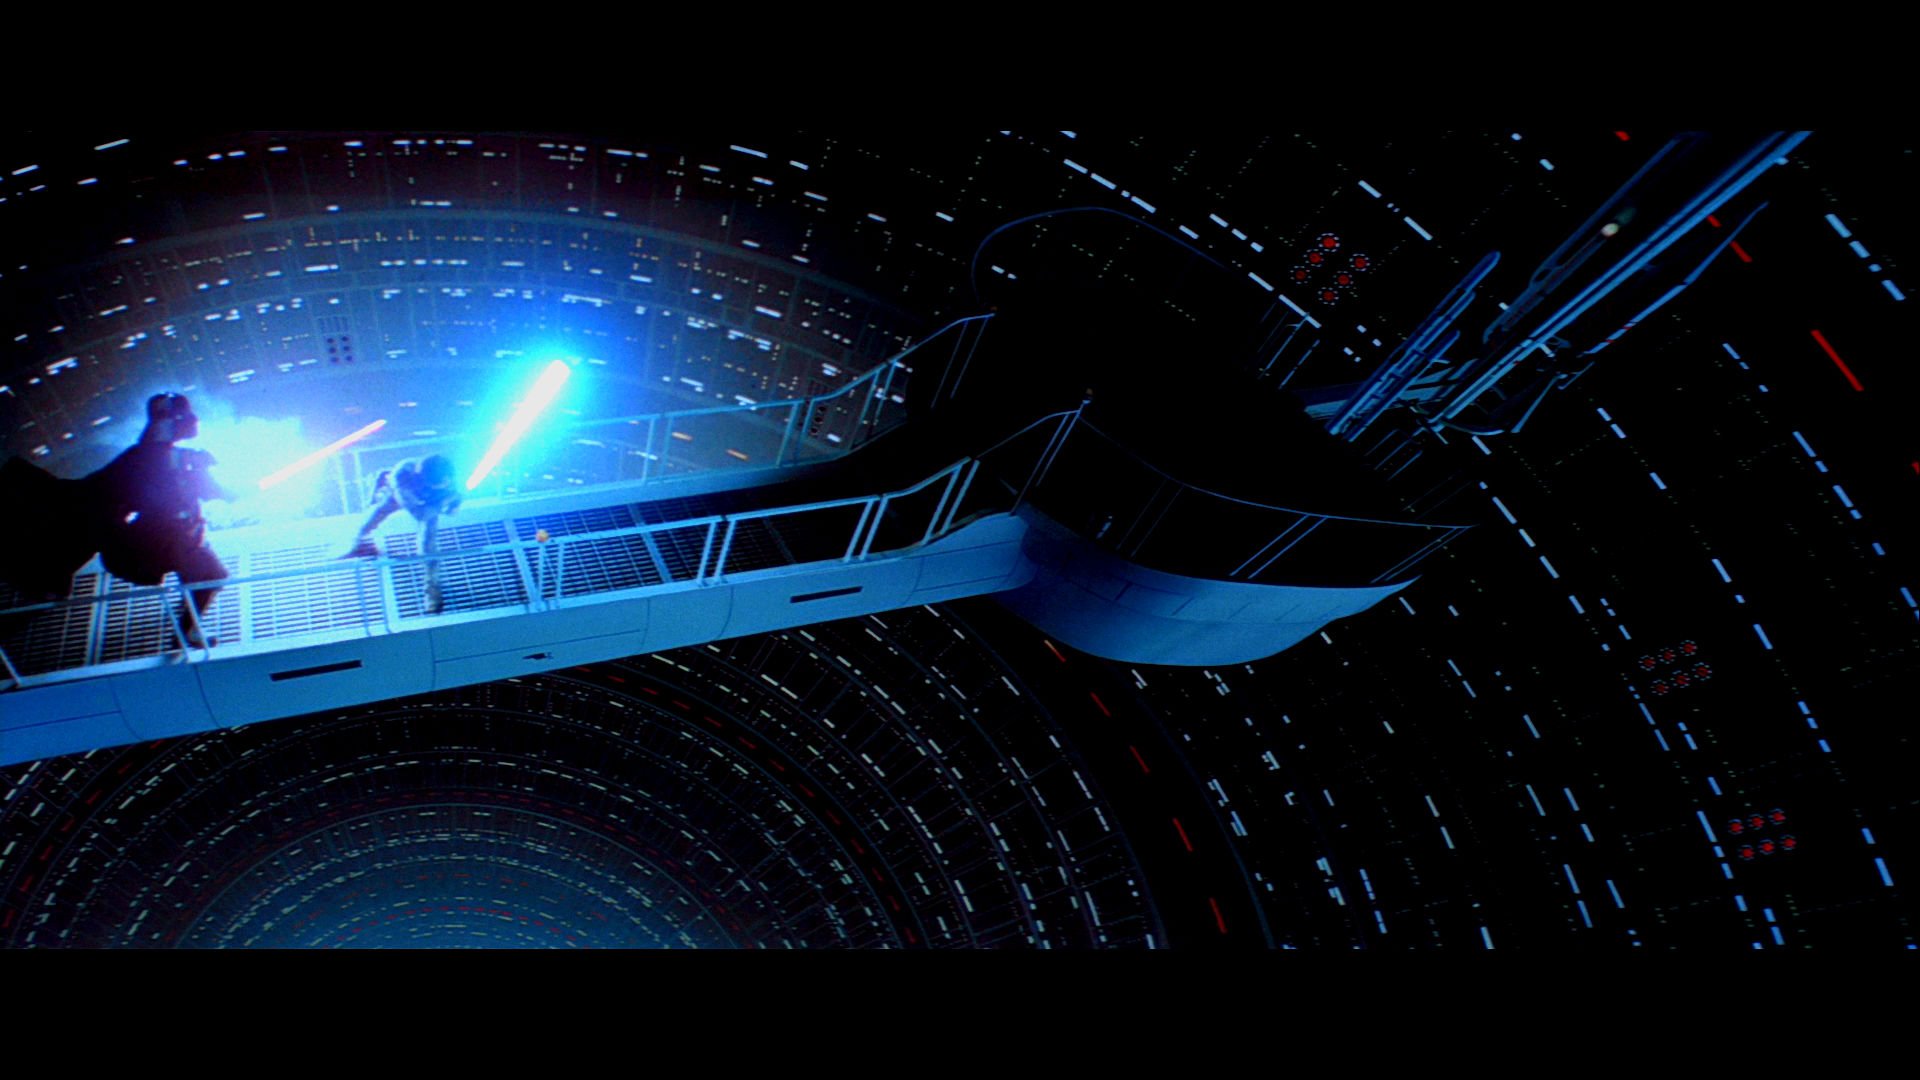 EMPIRE STRIKES BACK sci fi futuristic movie film action 76 wallpaper